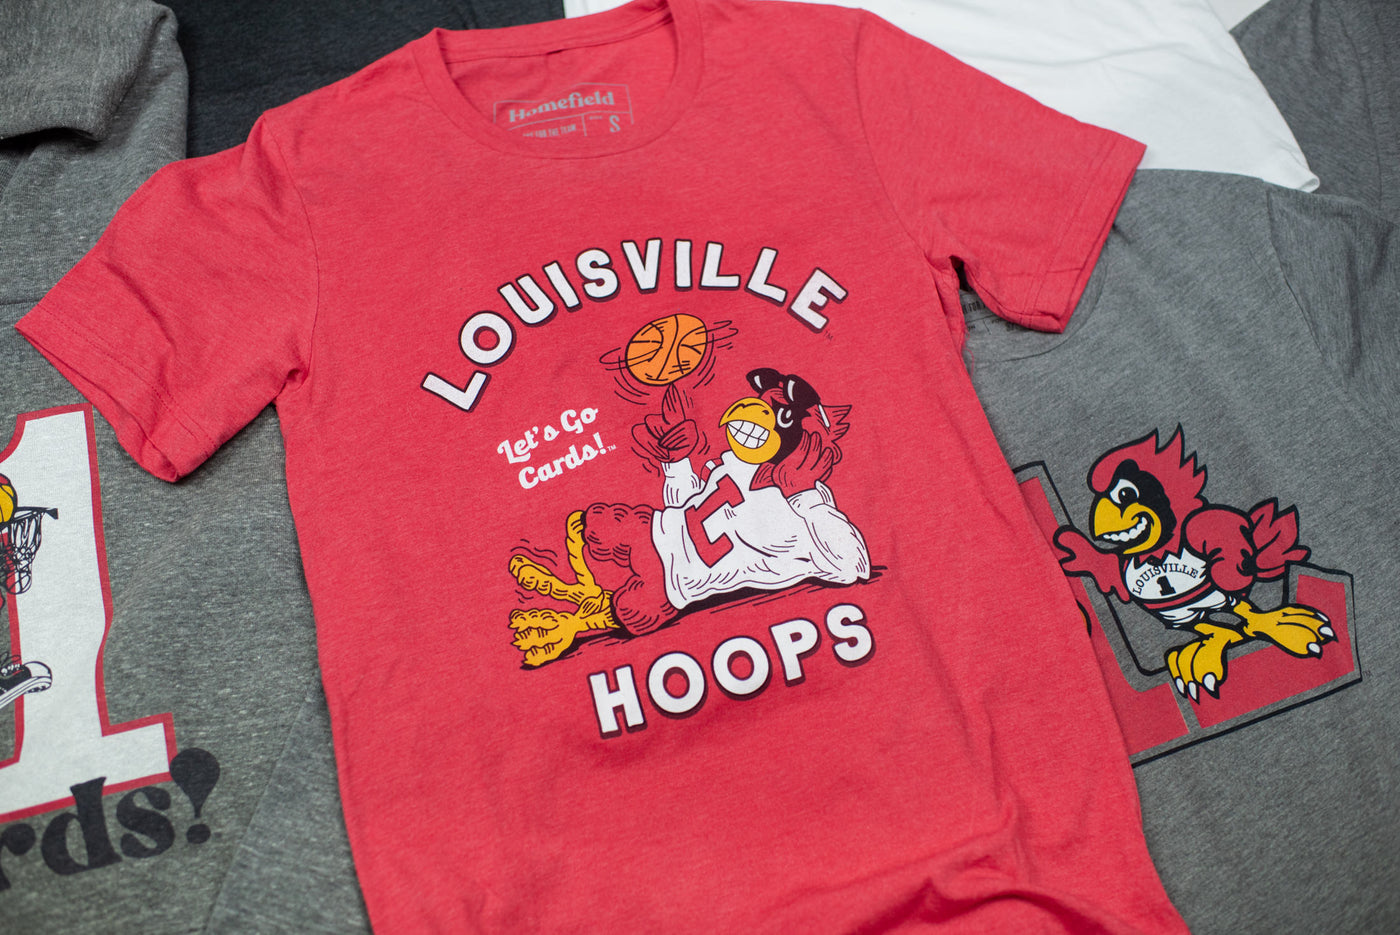 Louisville Cardinals Gifts, Louisville Cardinals Jerseys, Gear